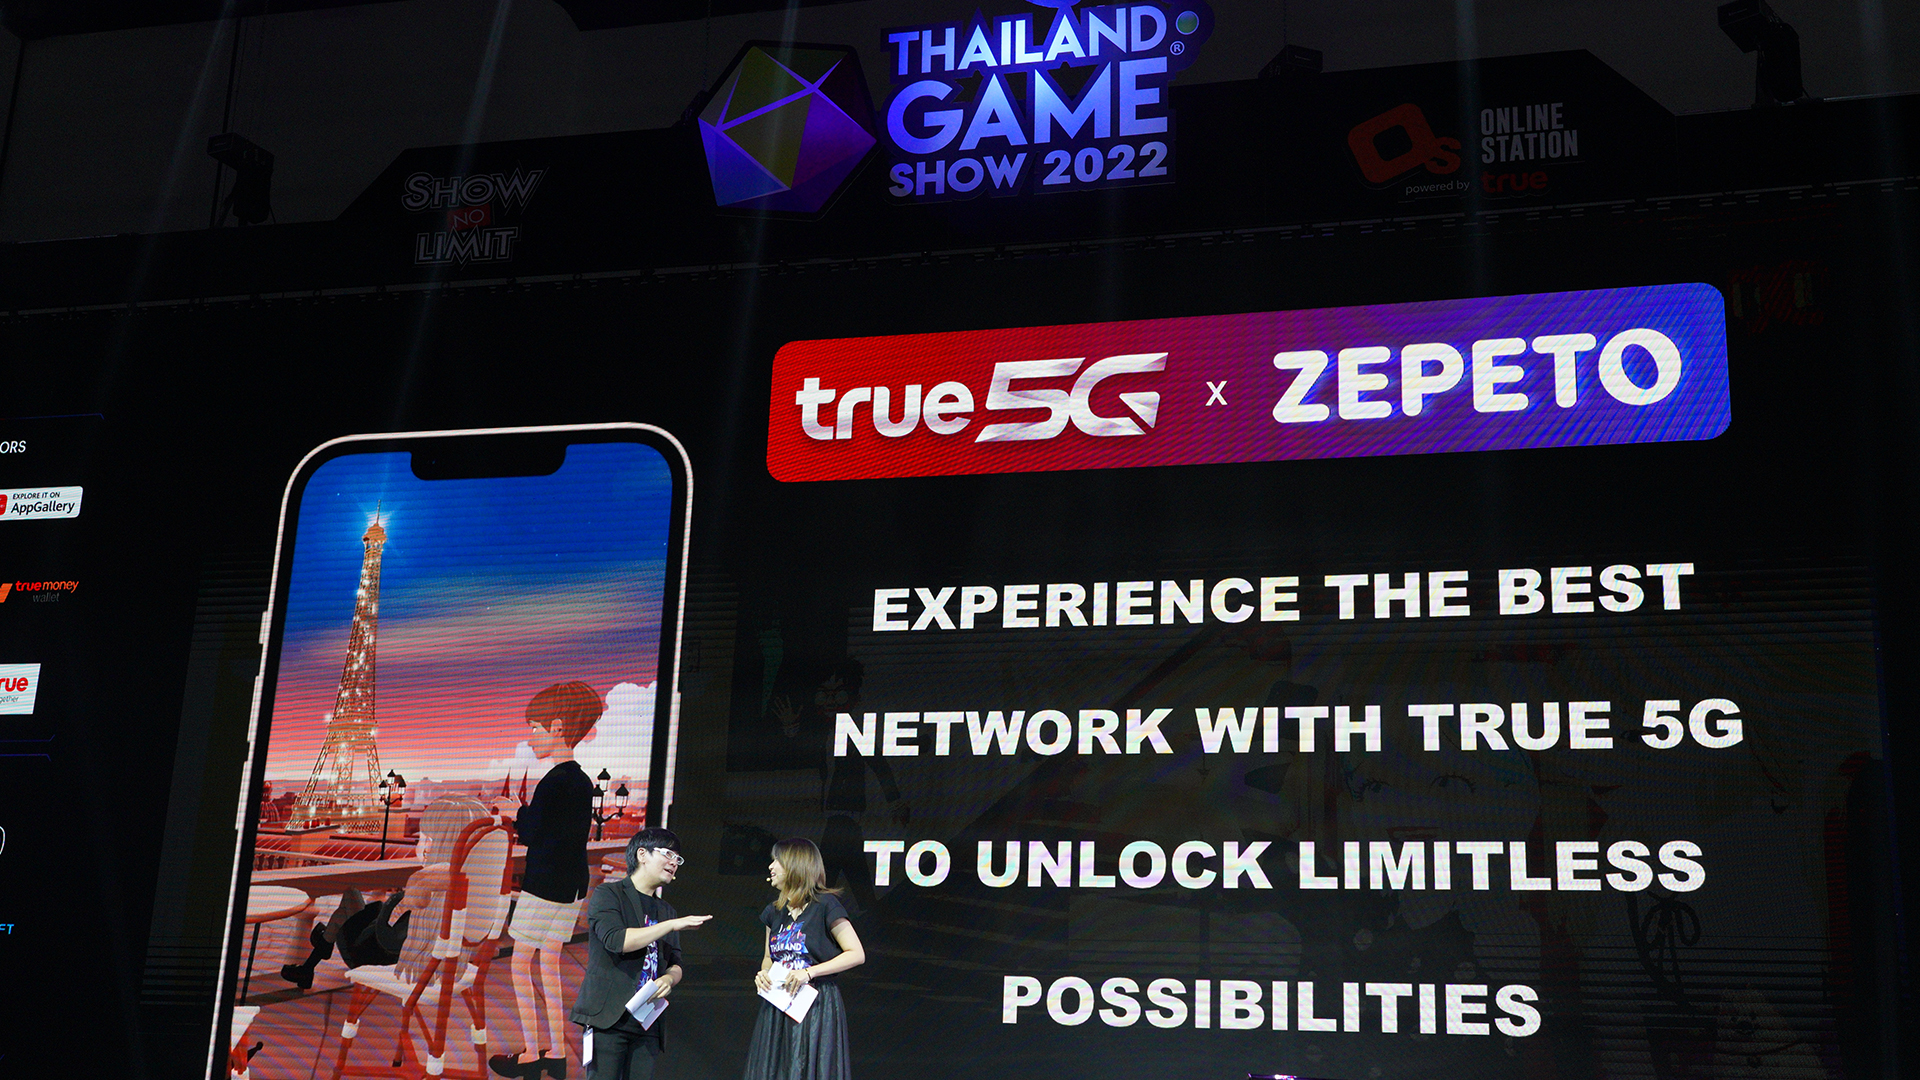 TRUE จับมือ Zepeto แจกไอเทมในเกมฟรี ! พร้อมจัดกิจกรรมใน Thailand Game Show 2022